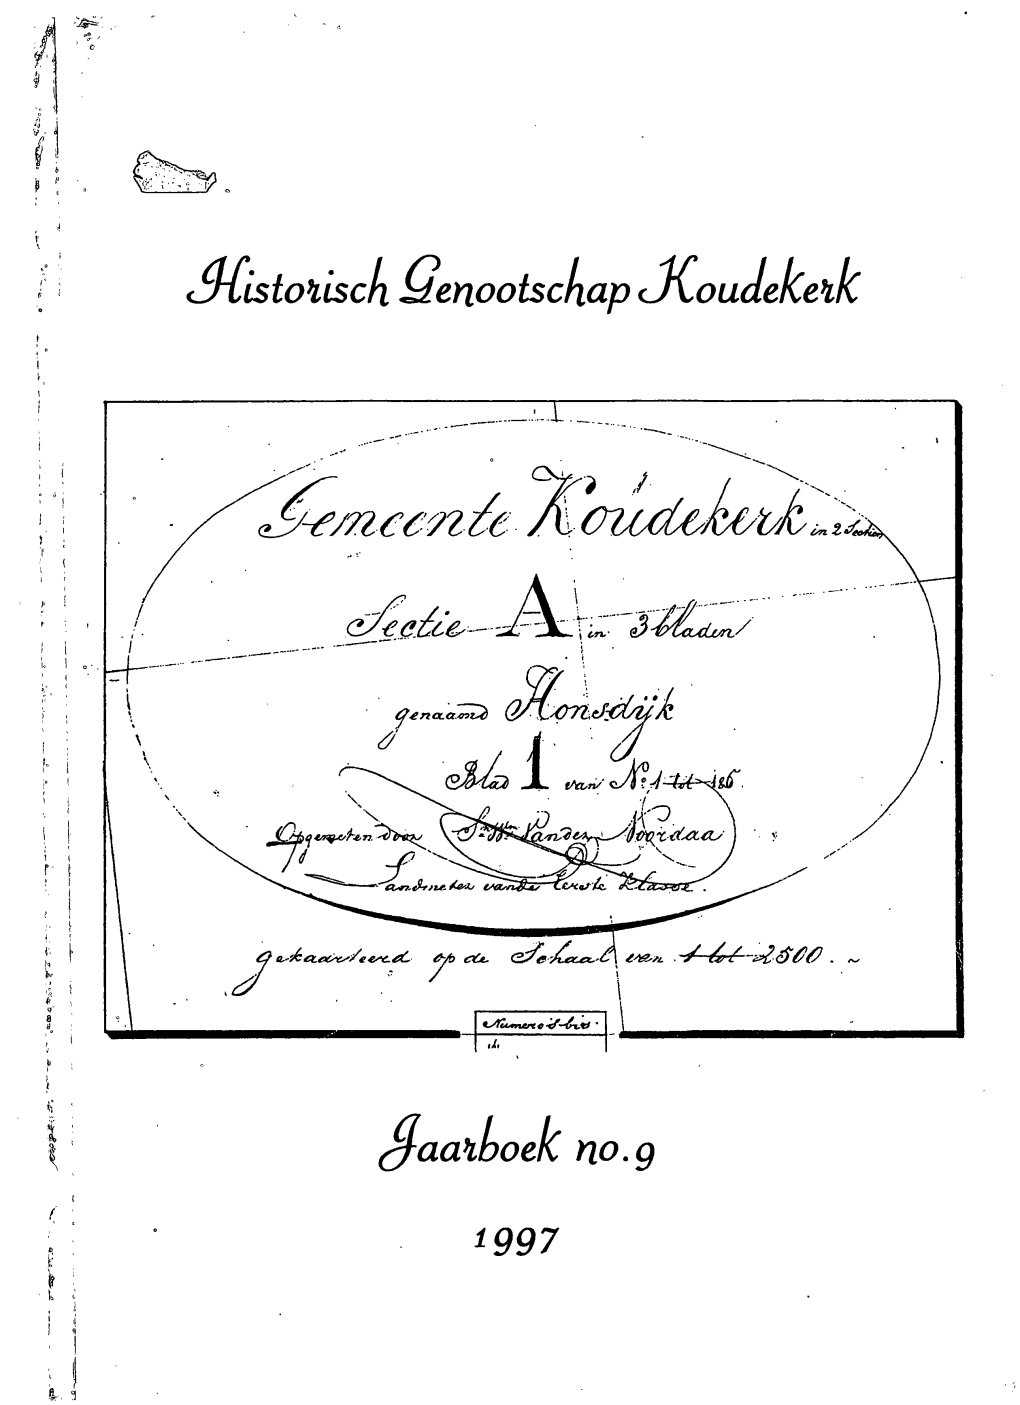 Jaarboek 1997 Historisch Genootschap Koudekerk Historisch Genootschap Koudekerk